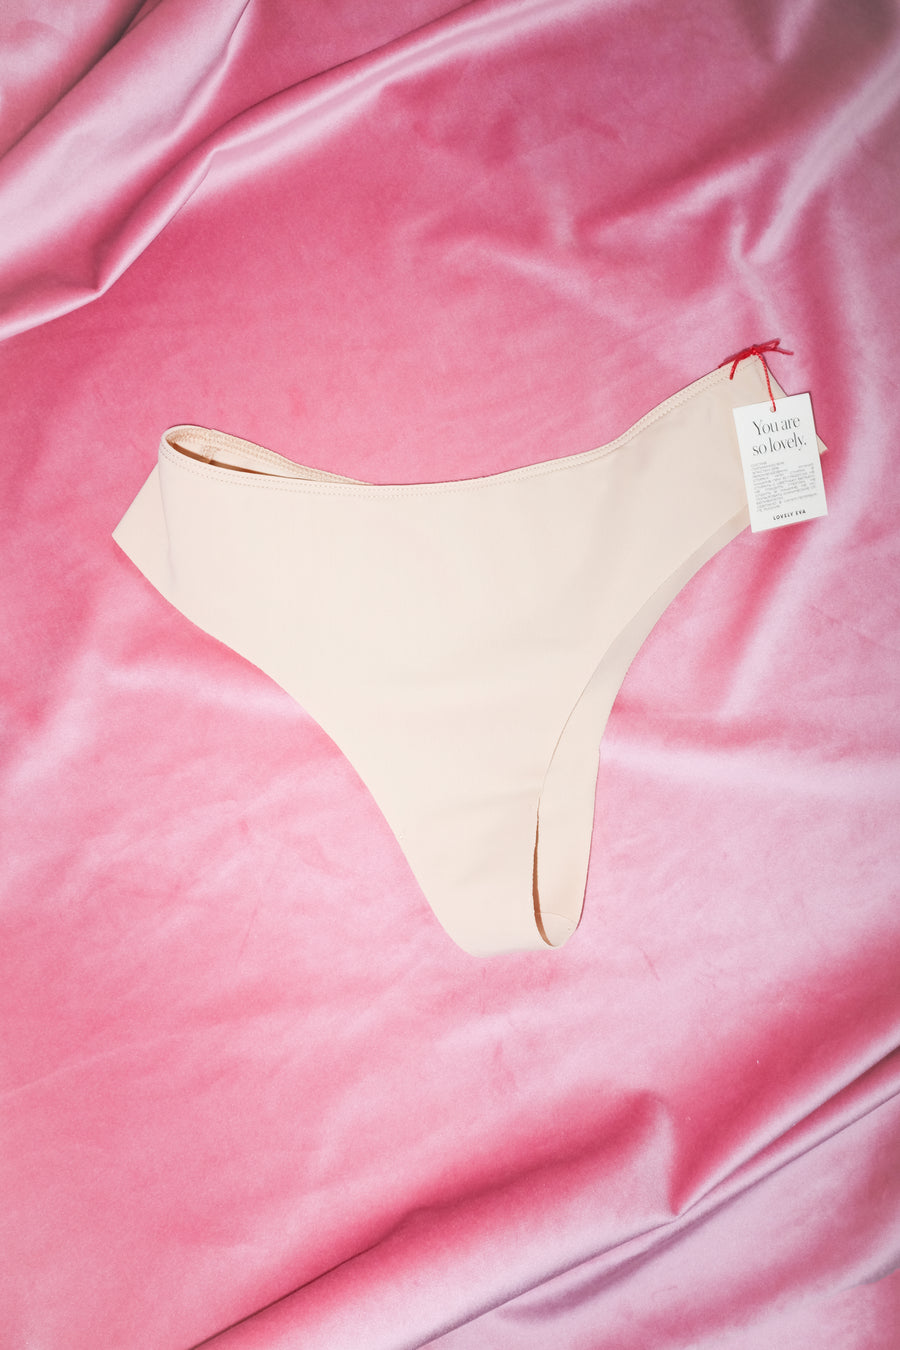 🎁 Set of underwear N3. Single strap bra and thong panties